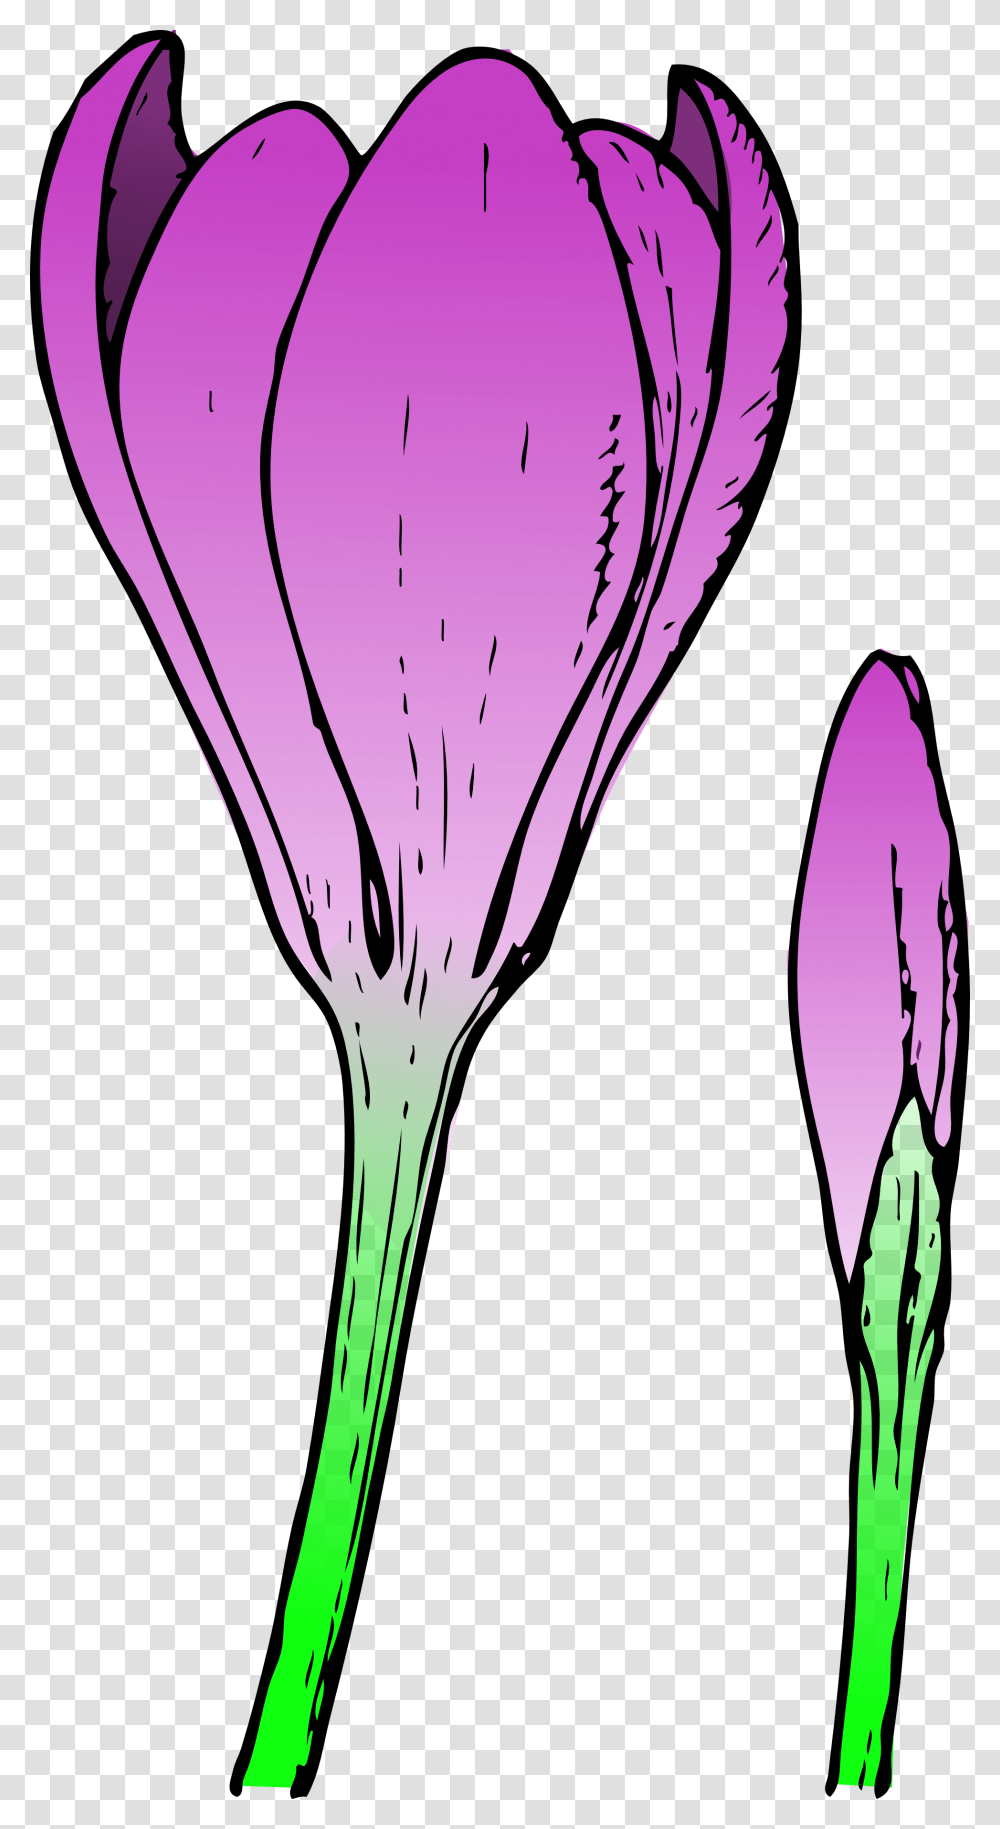 Clemson Tiger Paw Clip Art, Petal, Flower, Plant, Purple Transparent Png